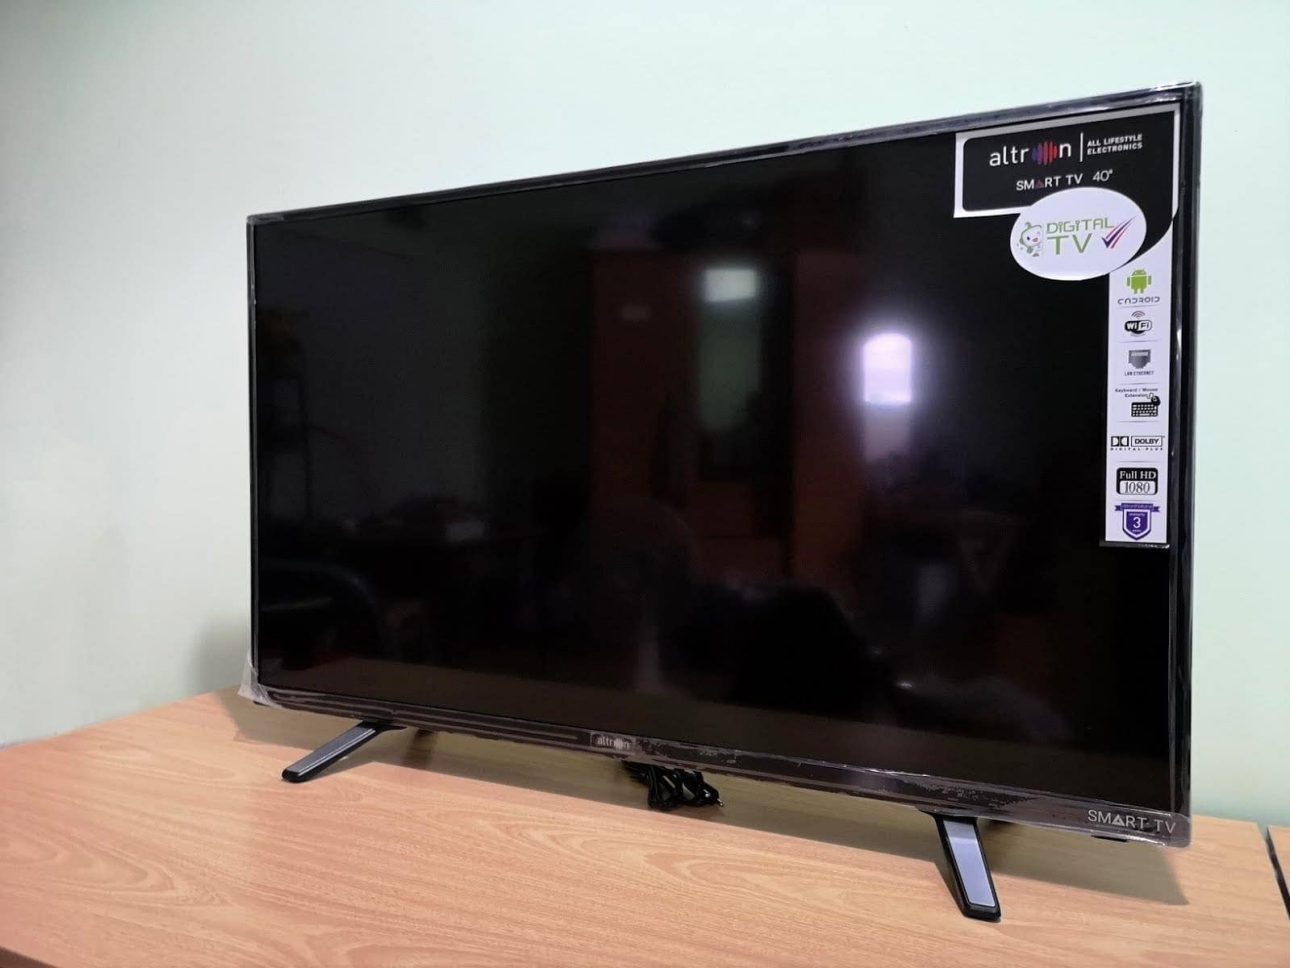 รีวิว altron LTV-4005 LED Smart TV ขนาด 40 นิ้ว จากผู้ผลิตธานินทร์แบรนด์ดังระดับตำนาน 7